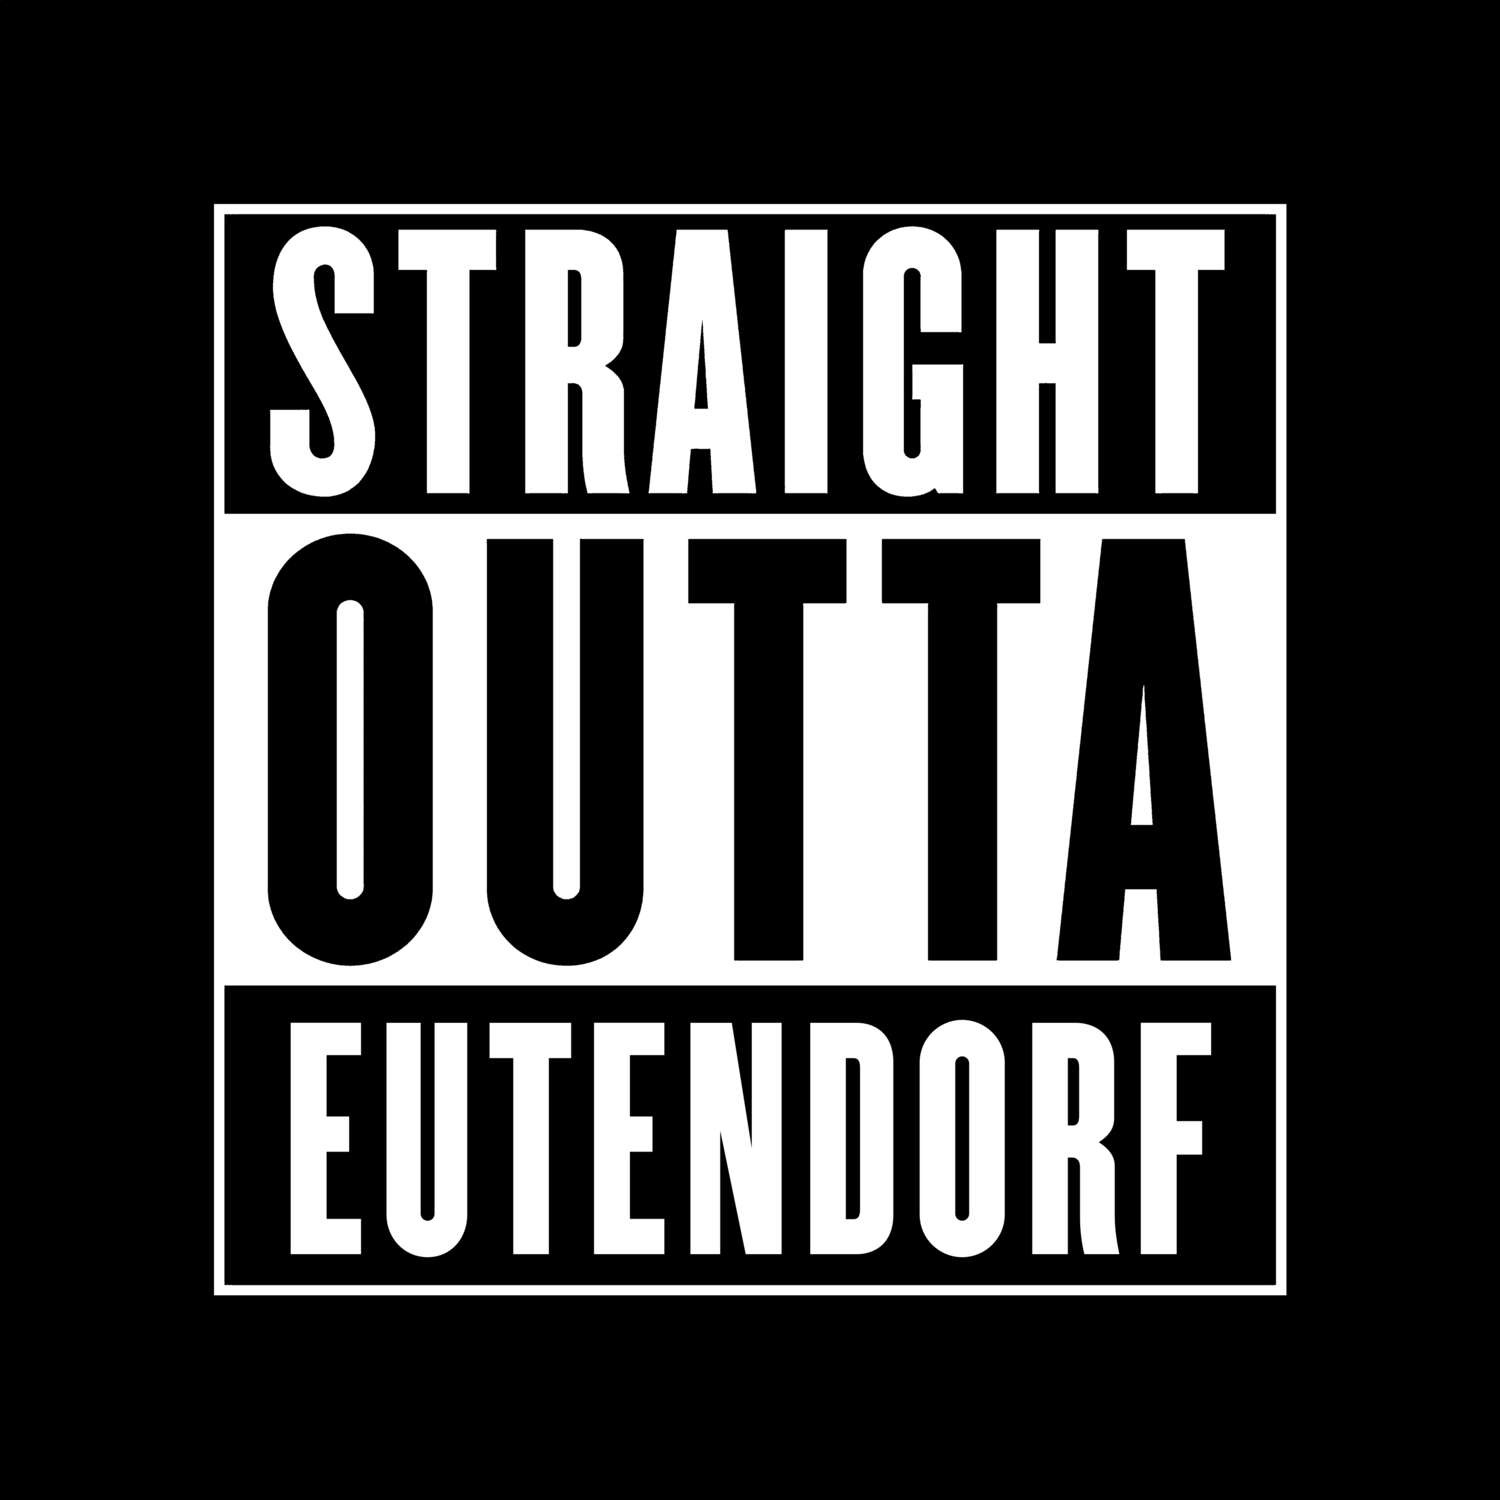 Eutendorf T-Shirt »Straight Outta«